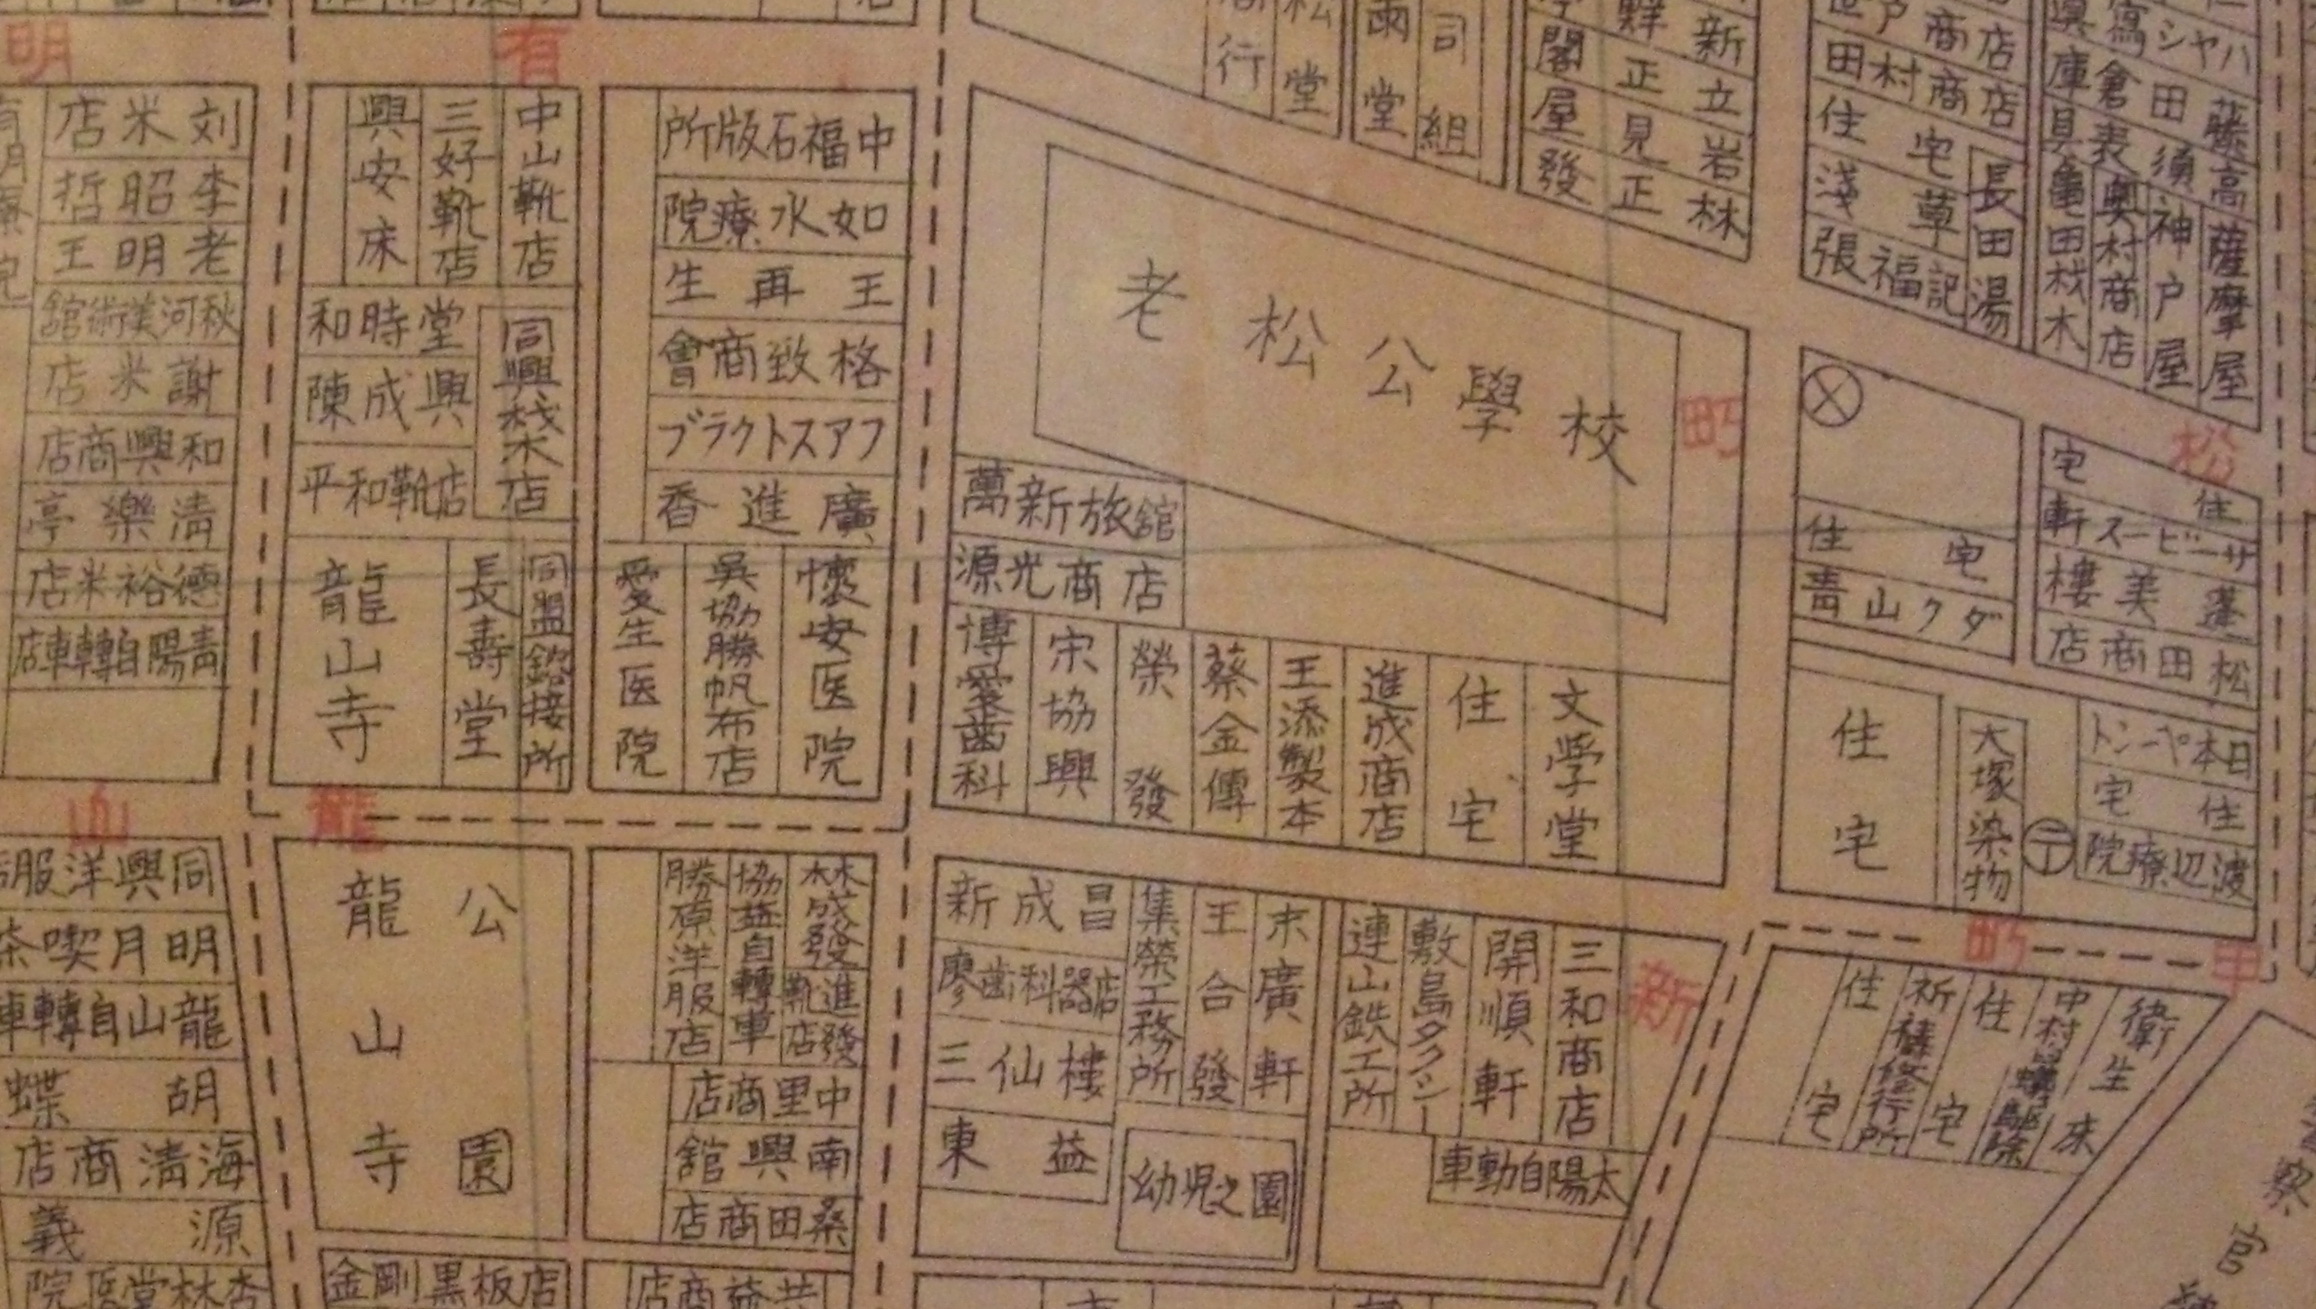 1935年剝皮寮及其鄰近區域之職業別明細圖.jpg